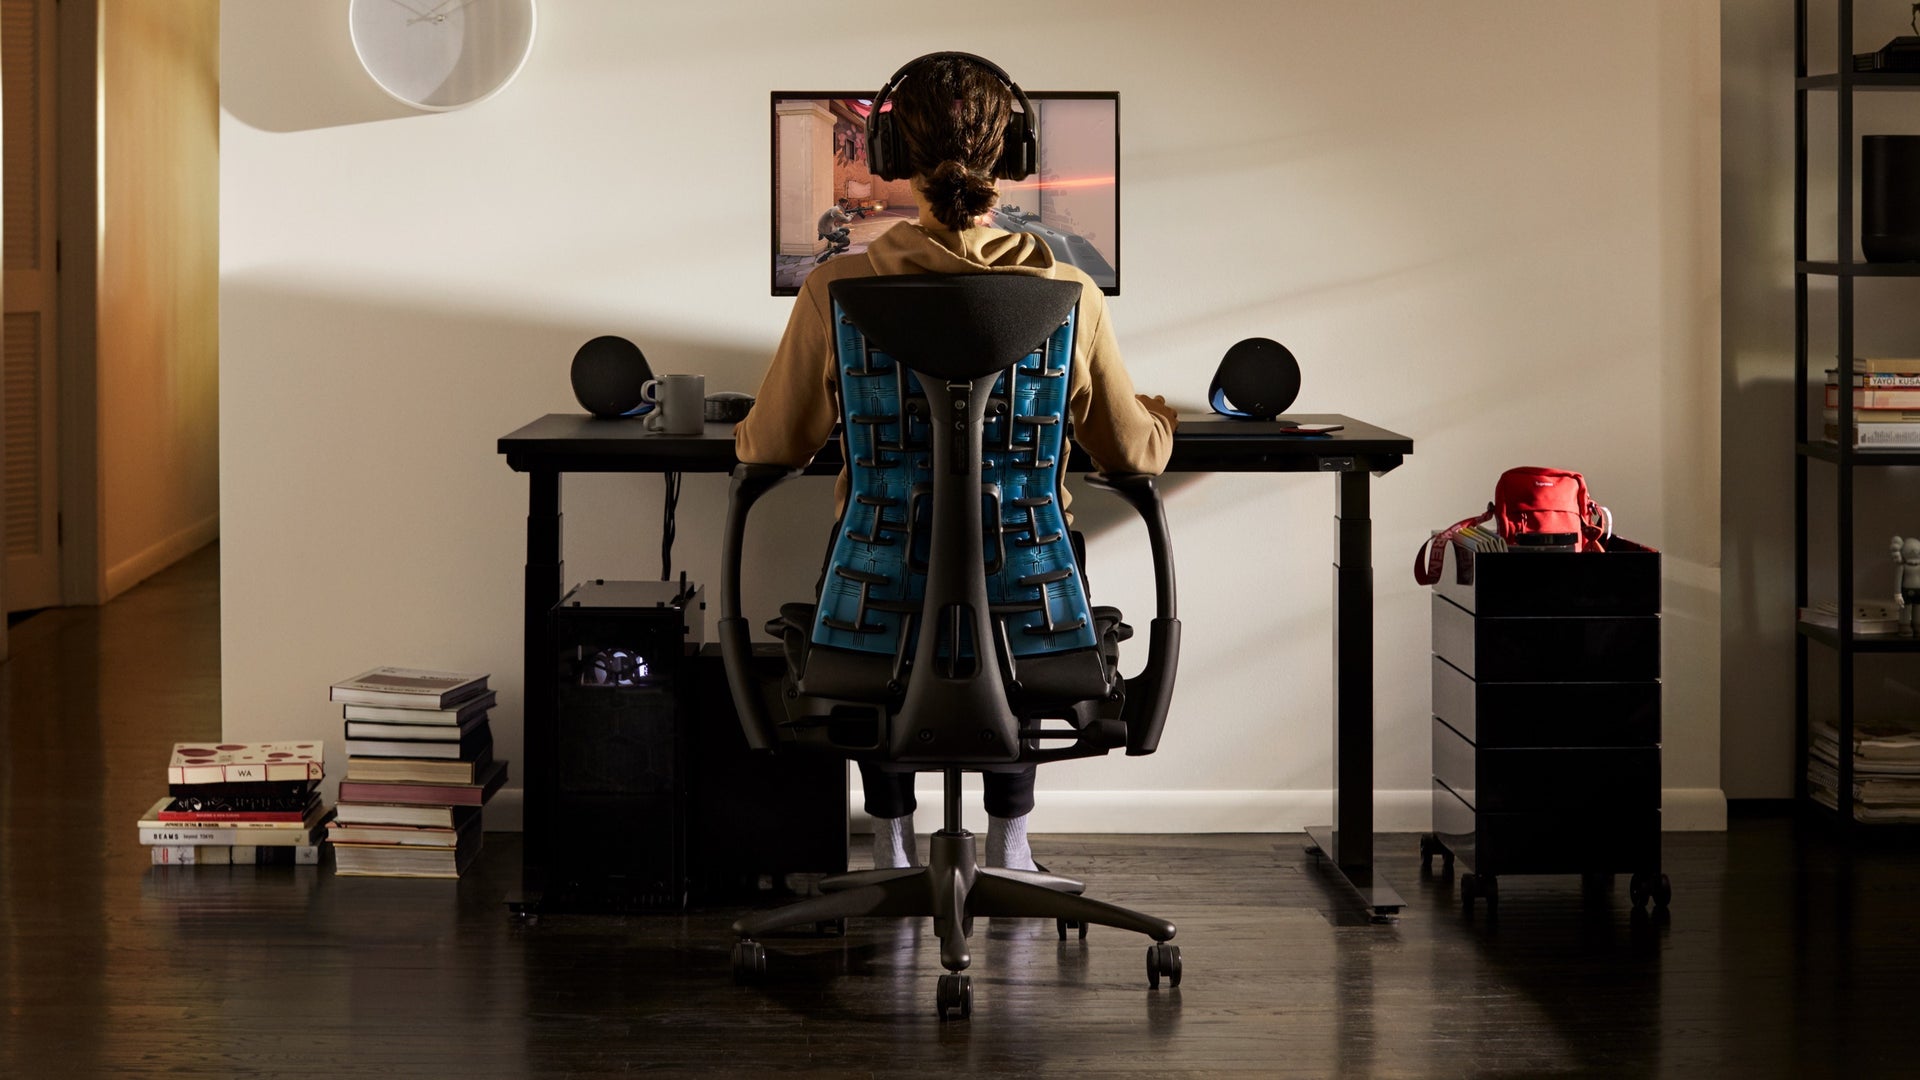 Una persona in una seduta per gaming Embody guarda un monitor posto su un braccio porta monitor Ollin, collocato su una scrivania per gaming in un ambiente domestico.